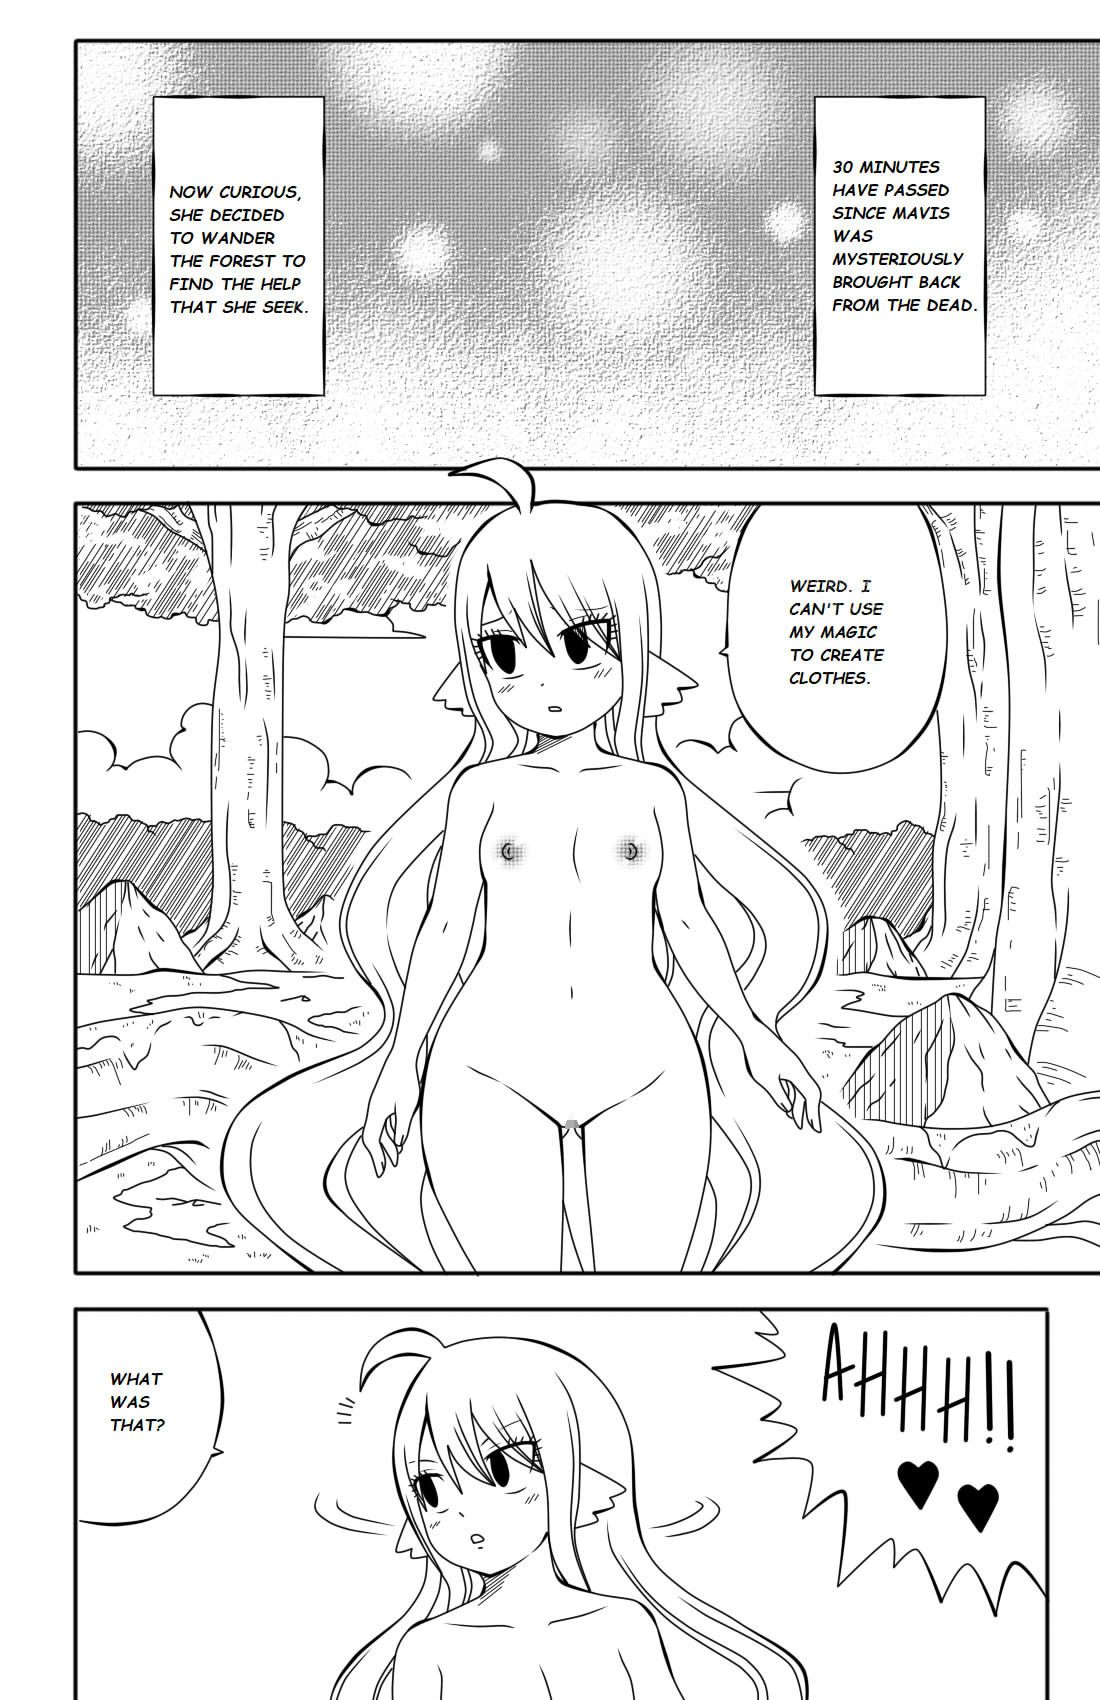 Fairy Tail H-Quest + Omake - Page 37 - 9hentai - Hentai Manga, Read Hentai, Doujin  Manga